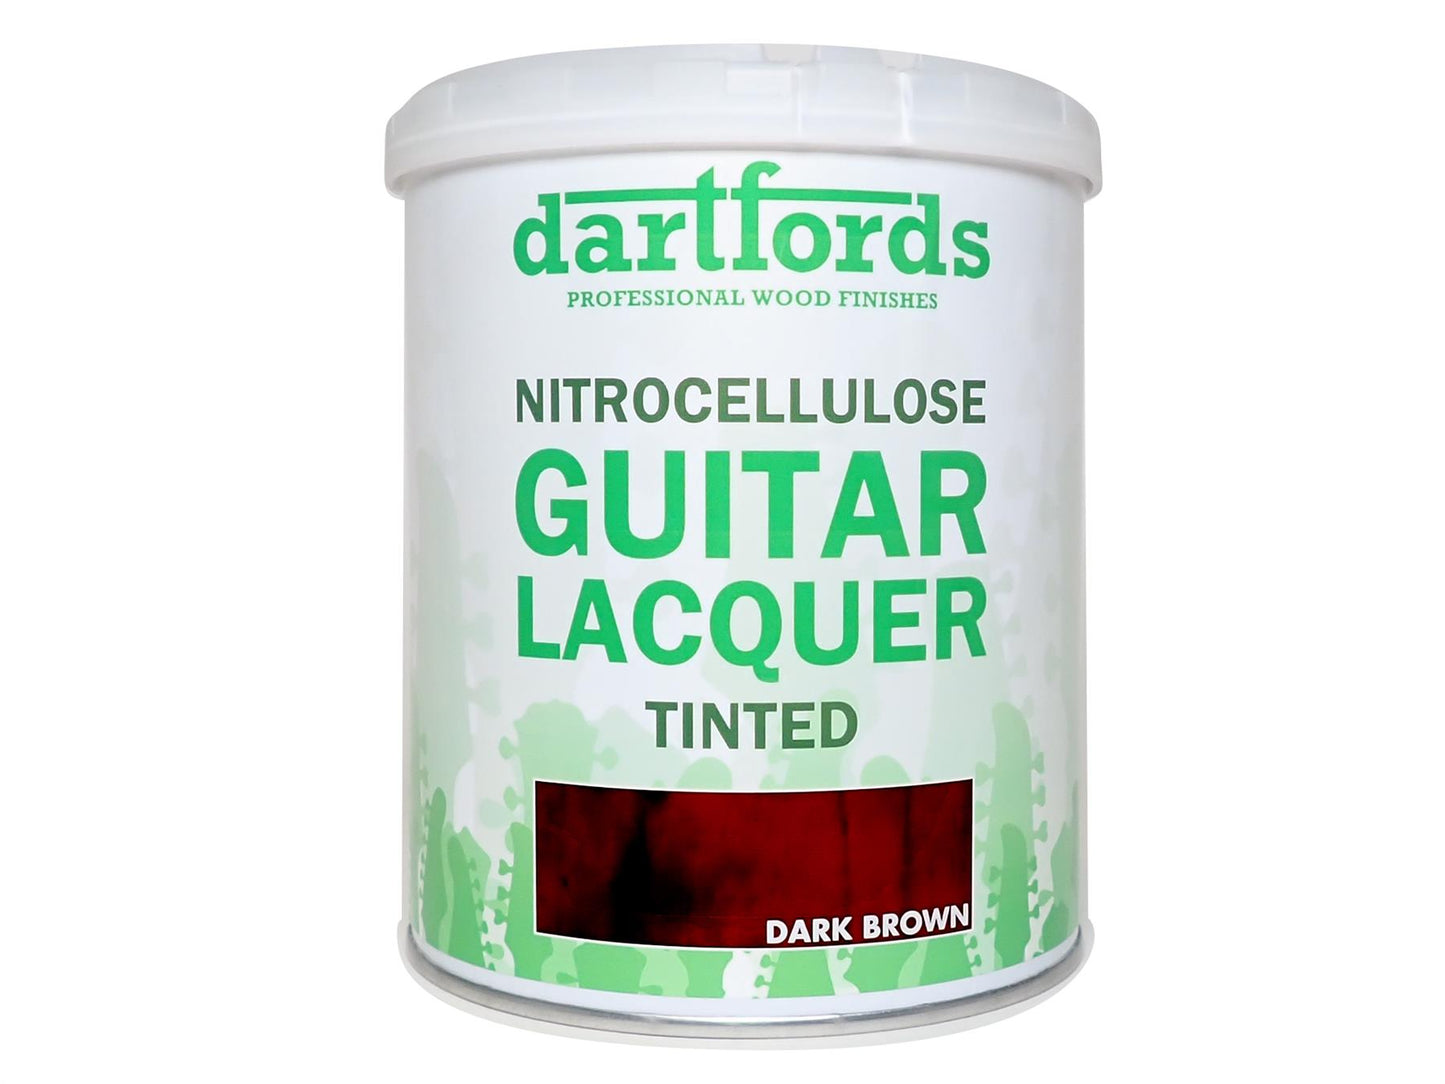 dartfords Dark Brown Nitrocellulose Guitar Lacquer - 1 litre Tin